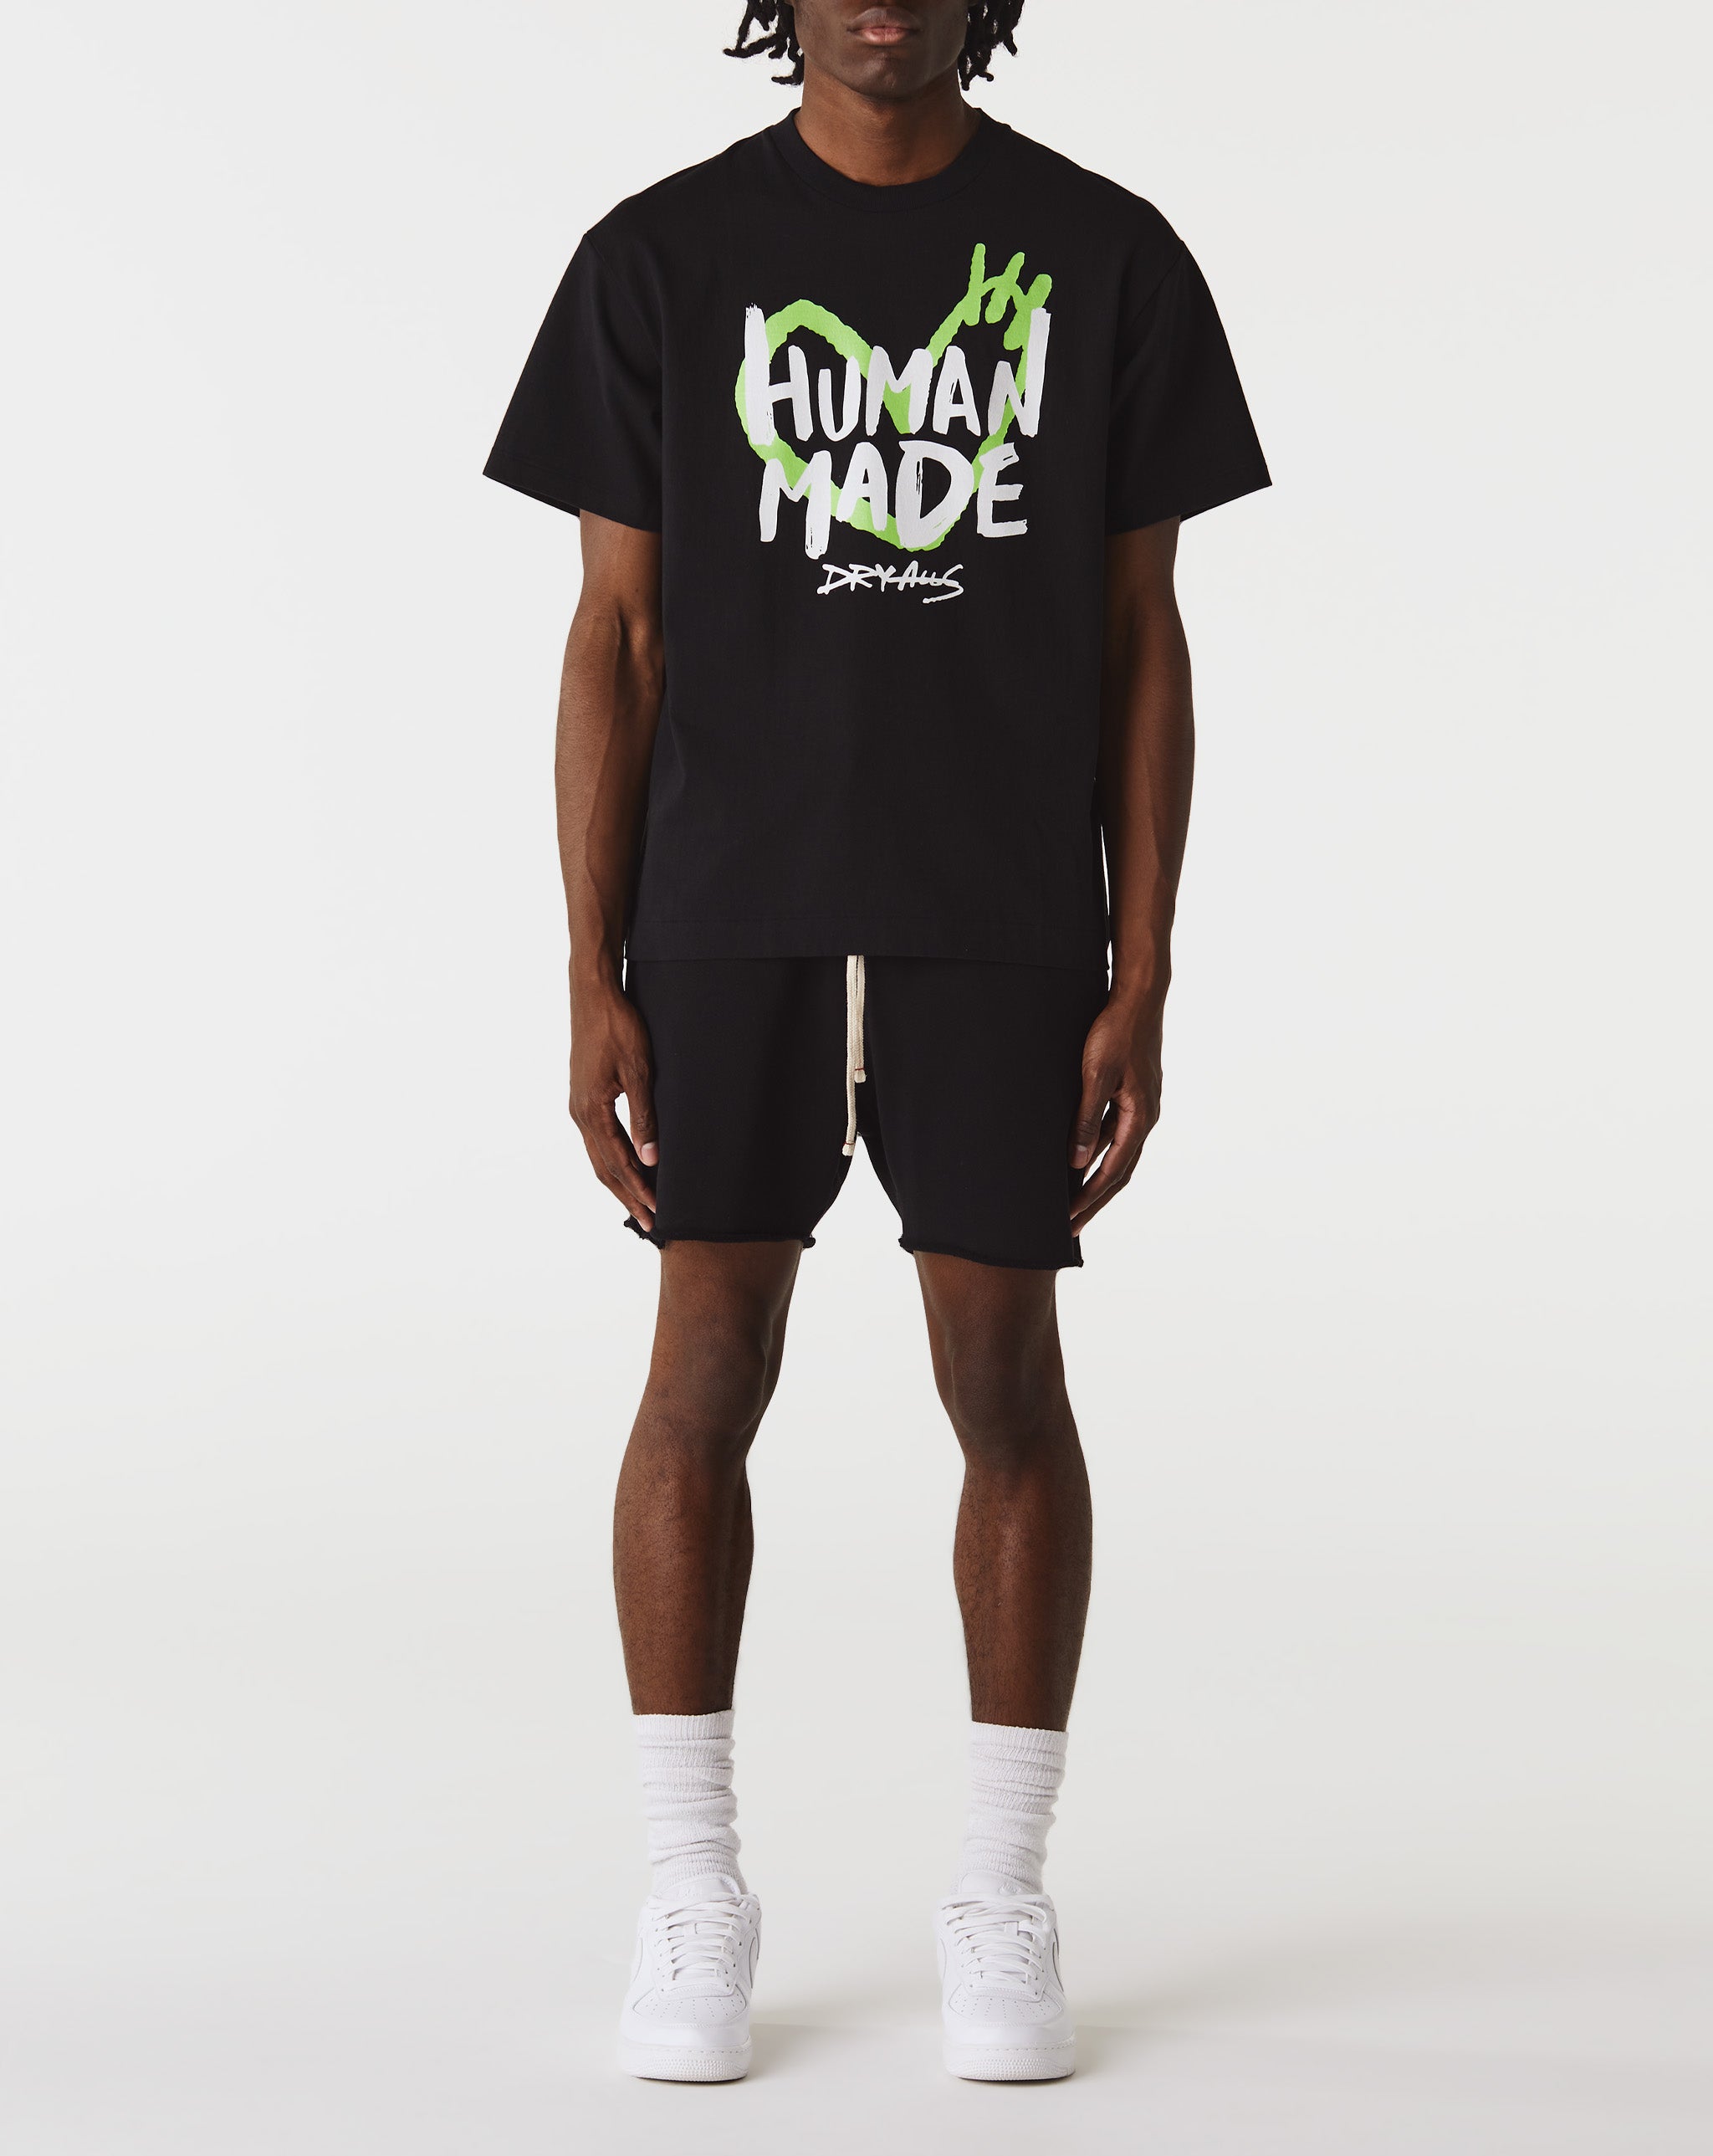 Human Made Graphic T-Shirt  - Cheap Urlfreeze Jordan outlet